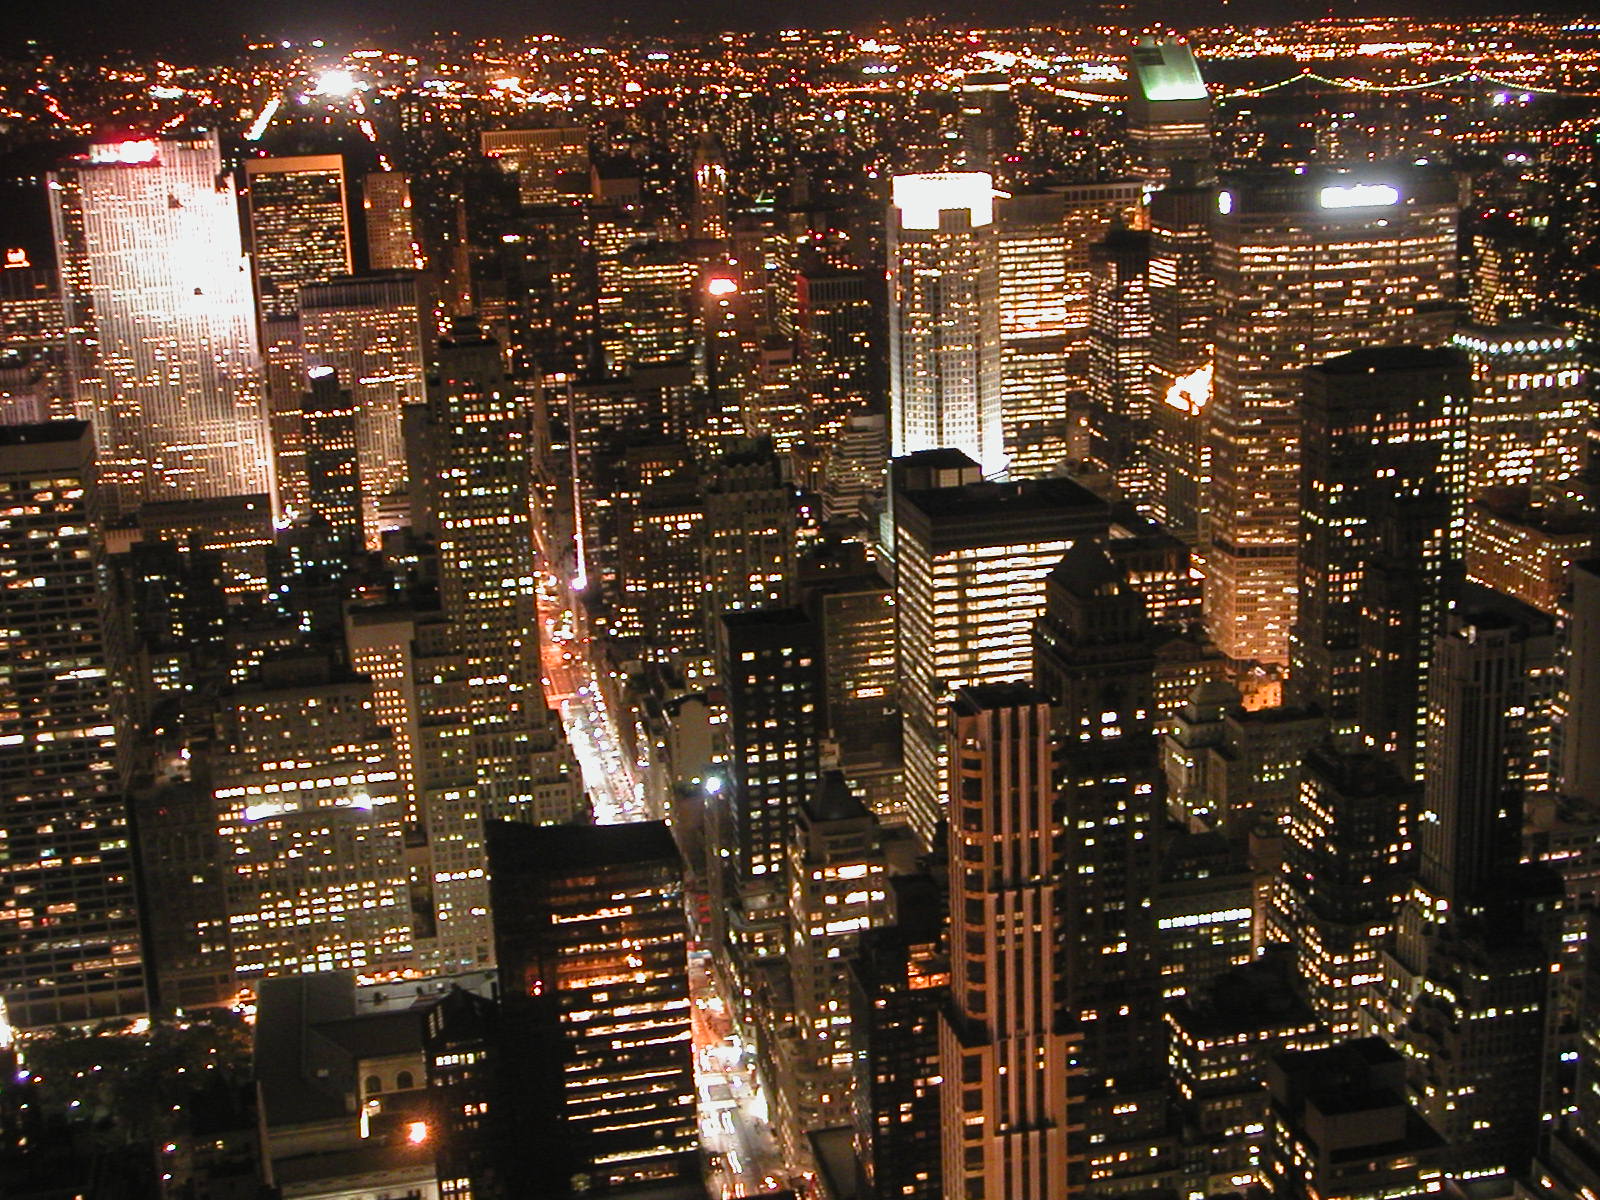 Nueva York, desde el Empire State Building, en 2004. Imagen: bizior. Fuente: Free Images.